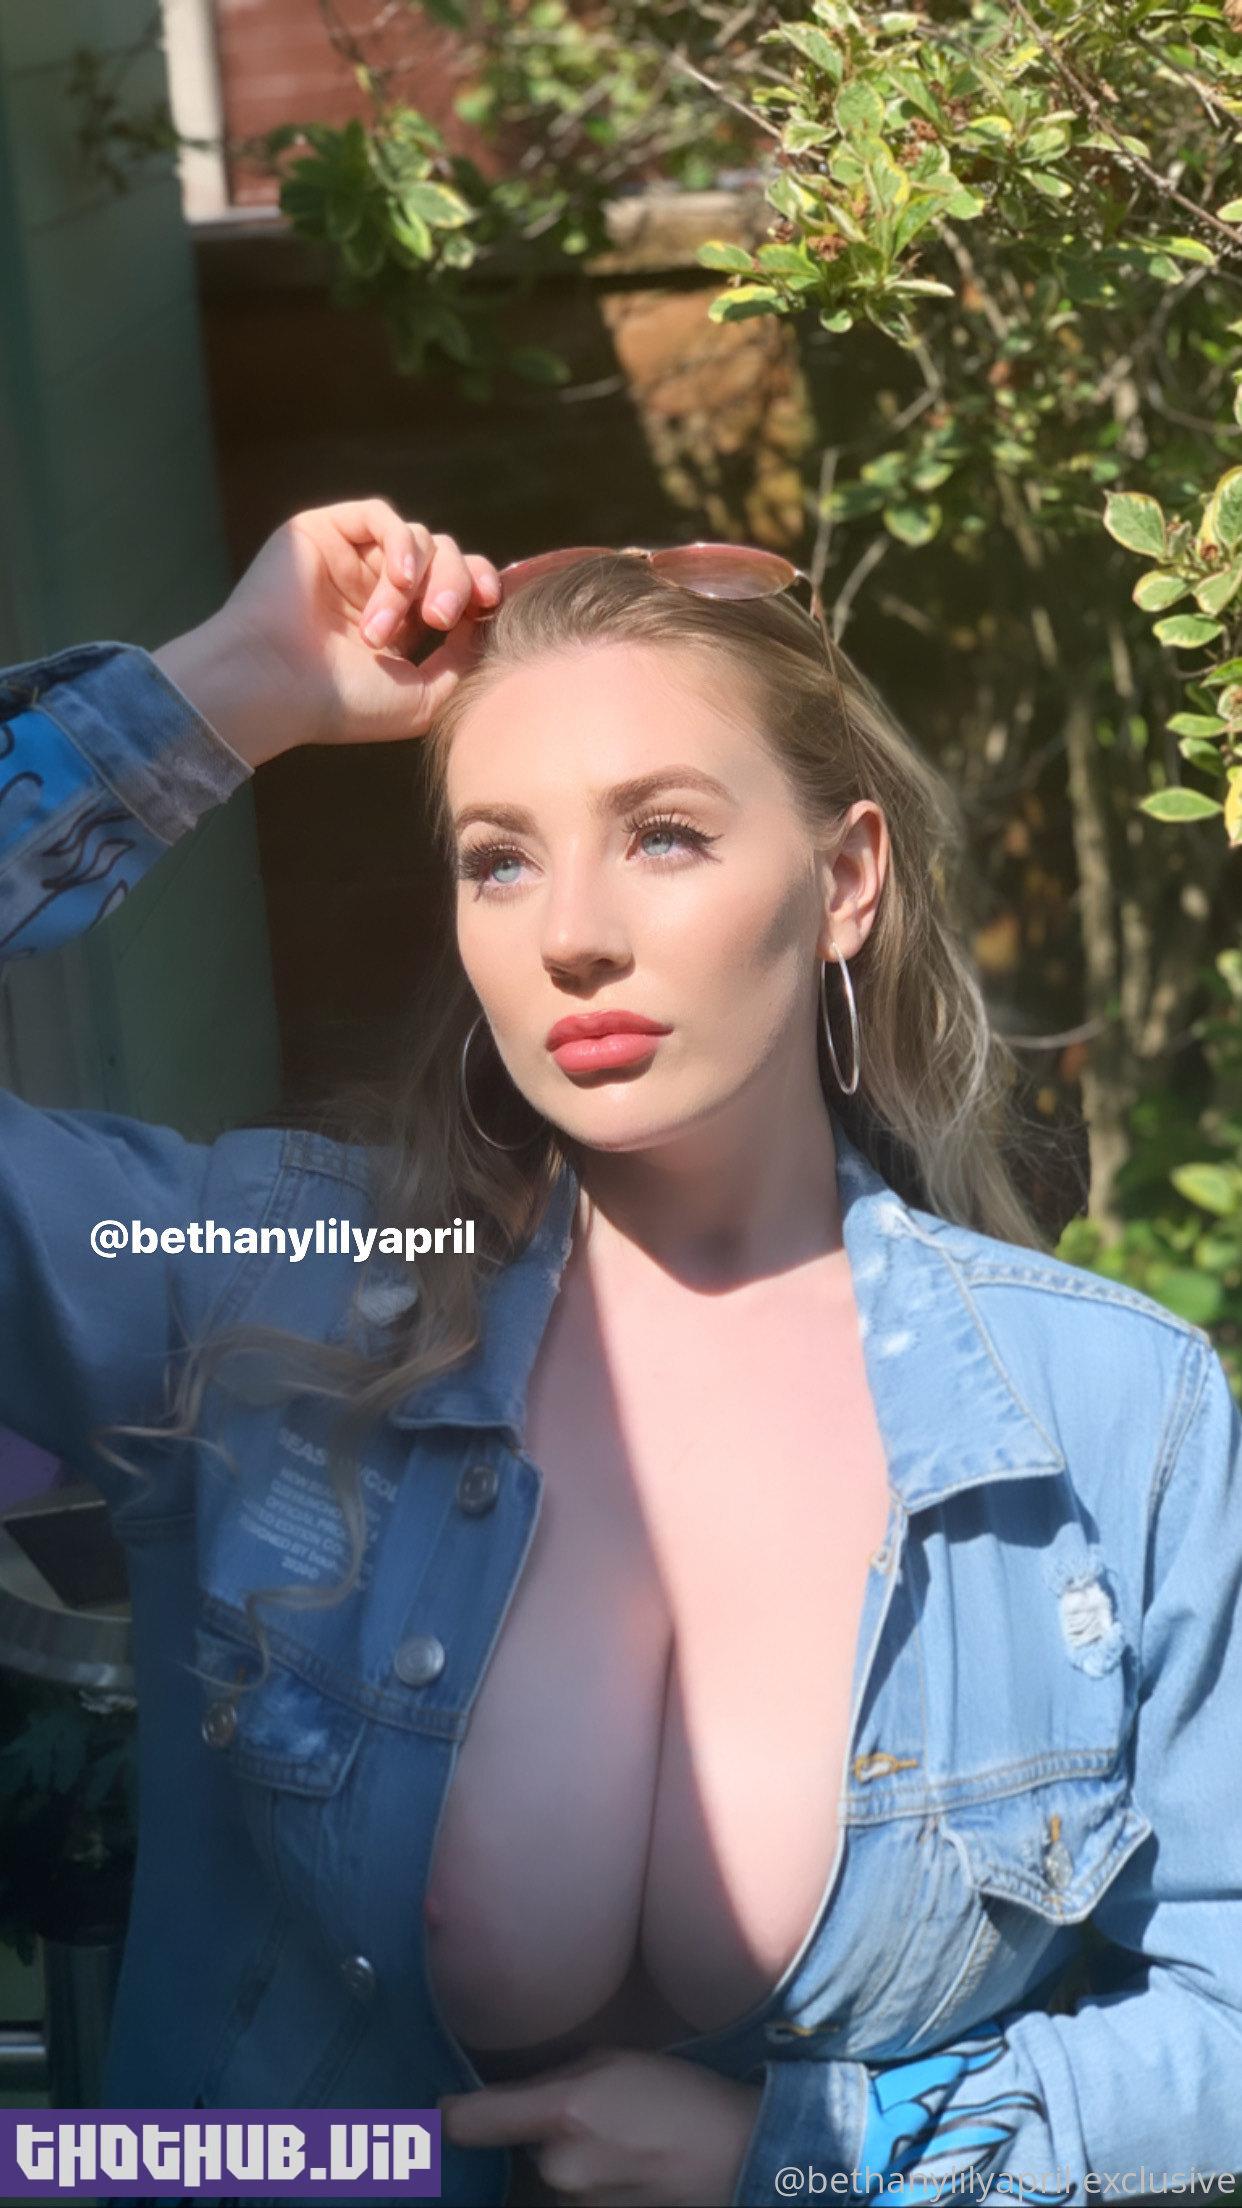 Bethany April